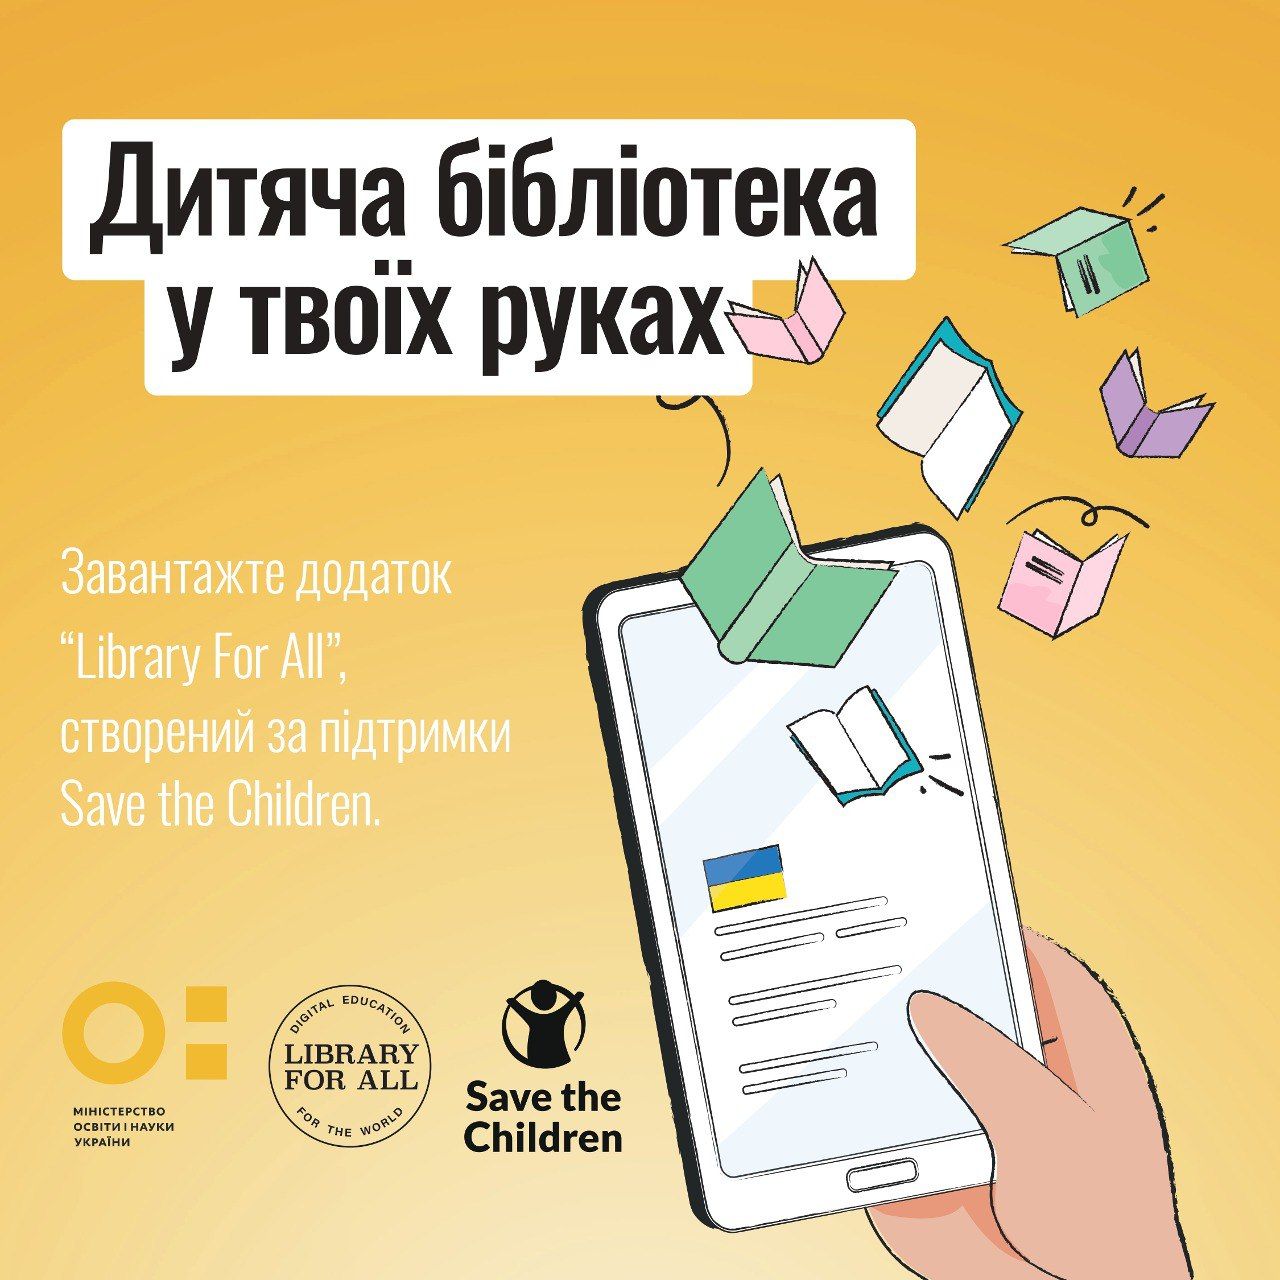 Книги для школьников - в Украине создали приложение, которое работает без интернета - 24 канал - Образование